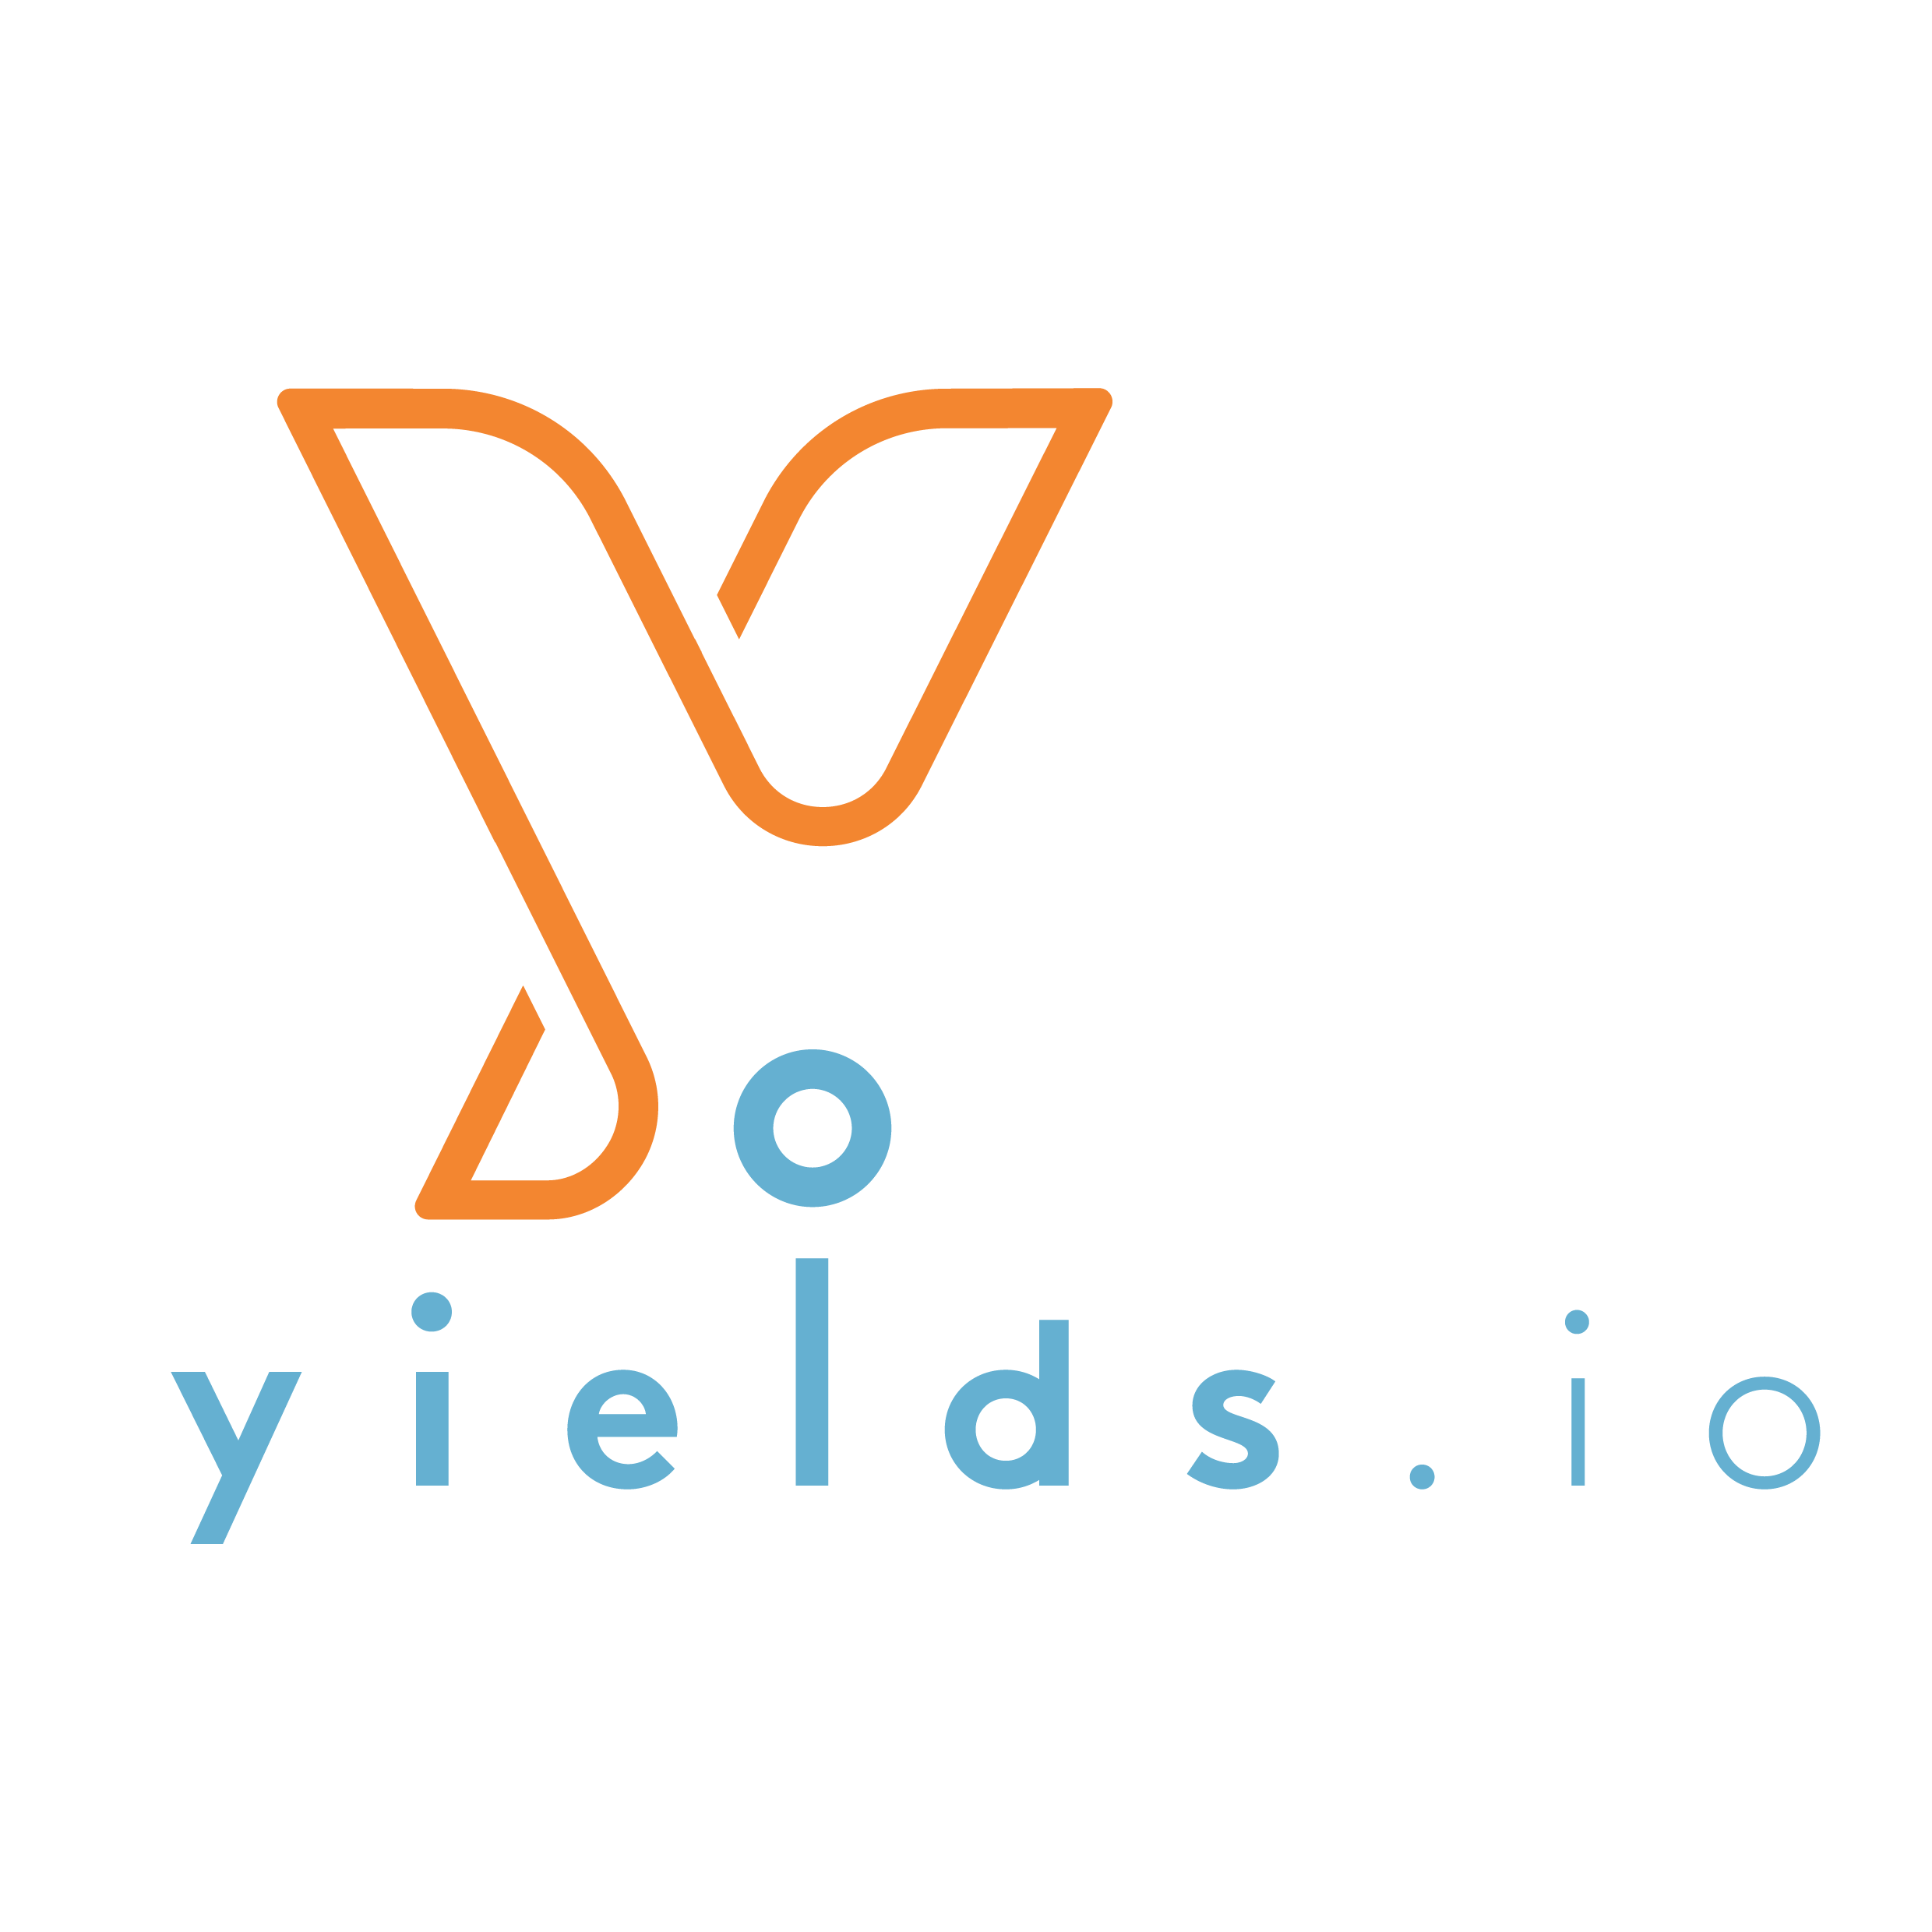 Yields